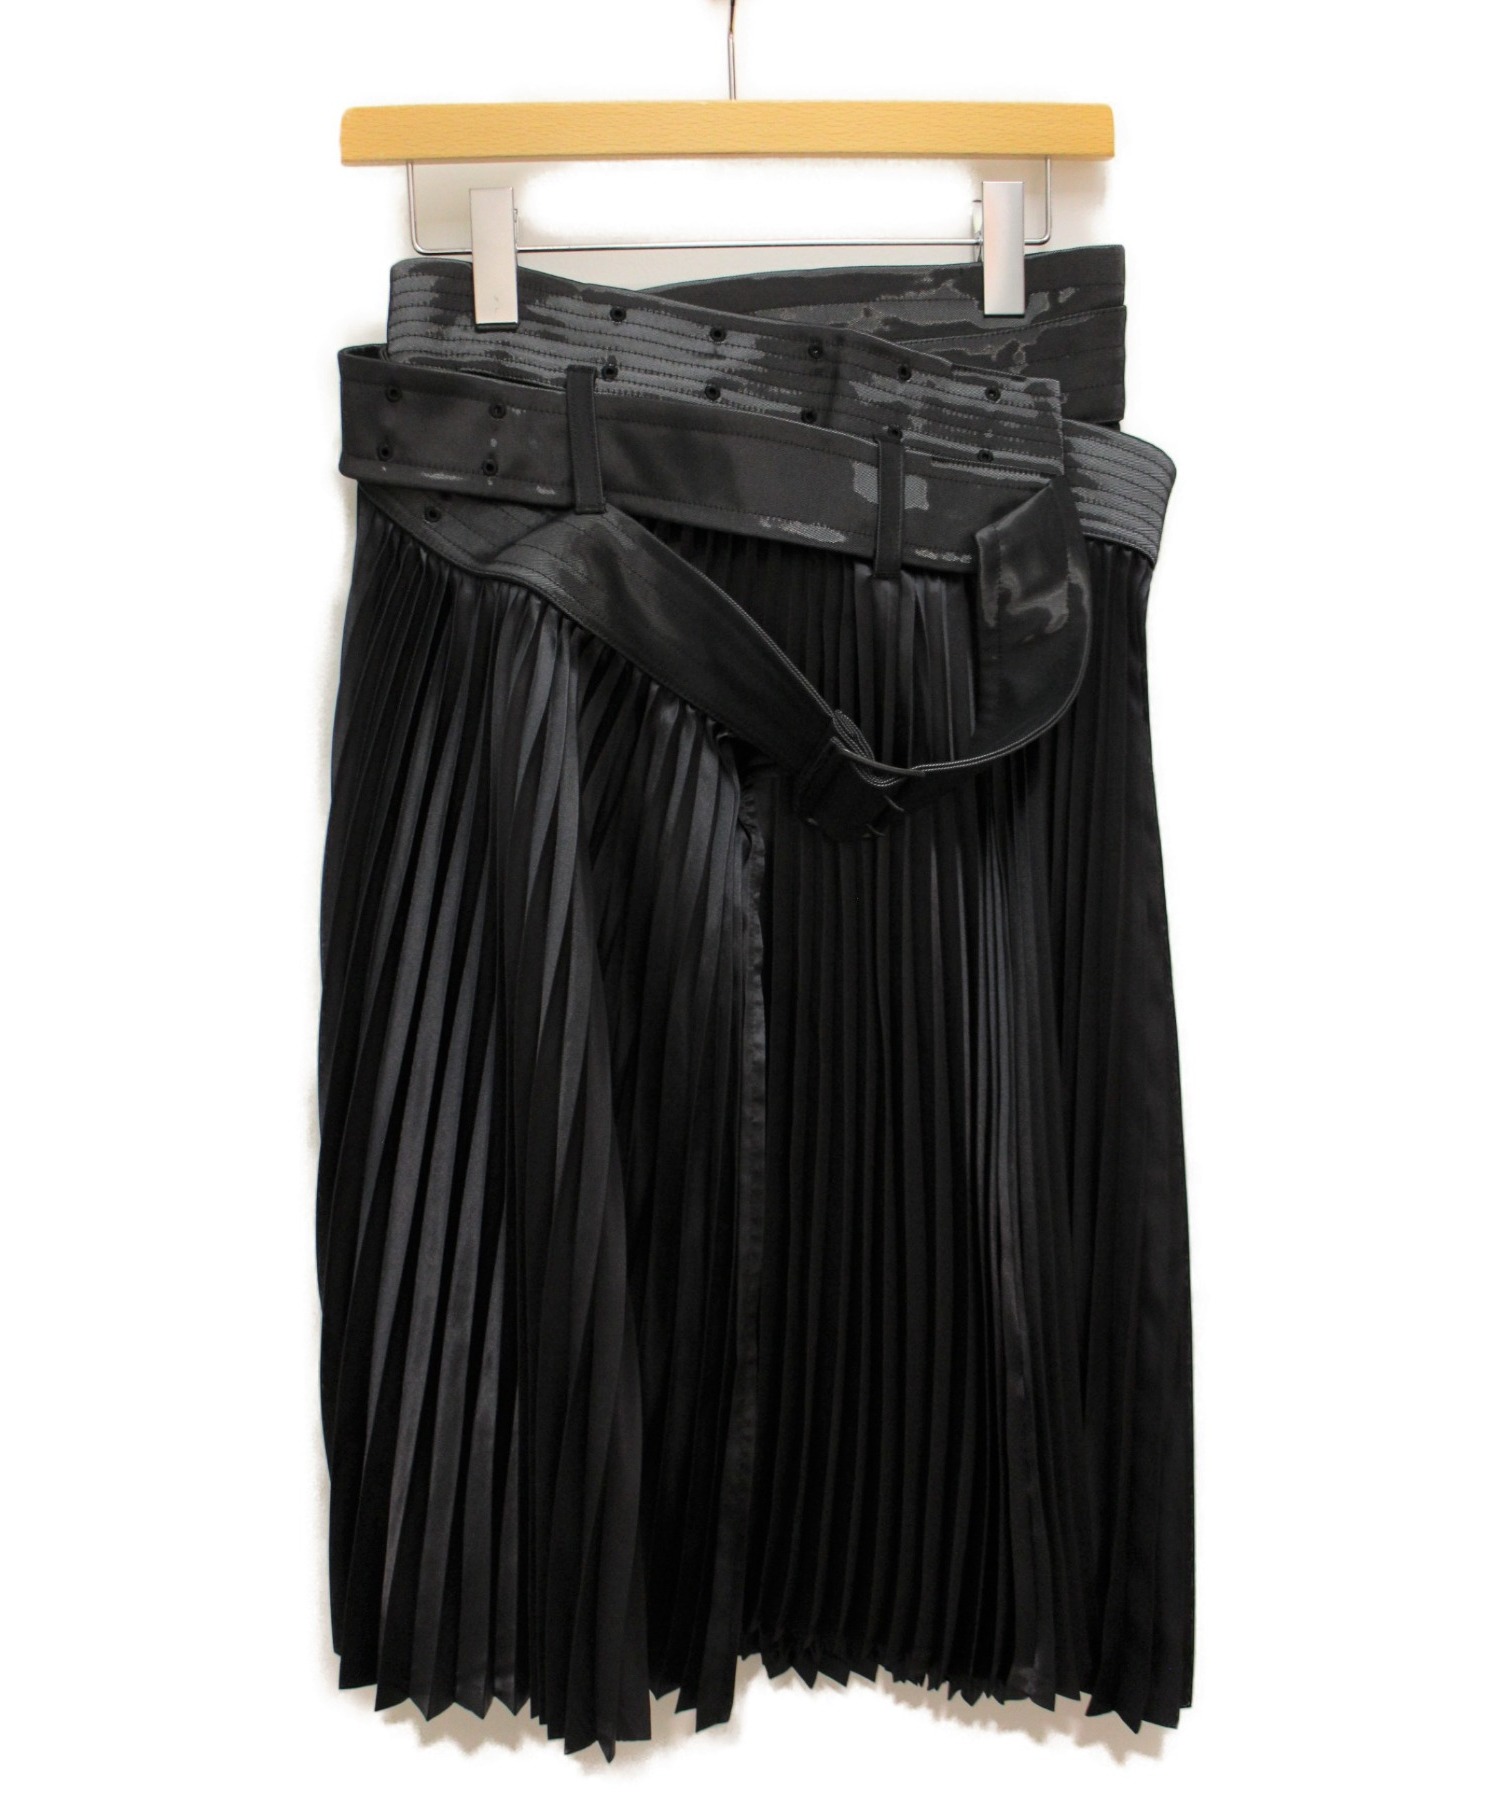 ジュンヤワタナベのプリーツスカートふくらはぎ丈透け感があります